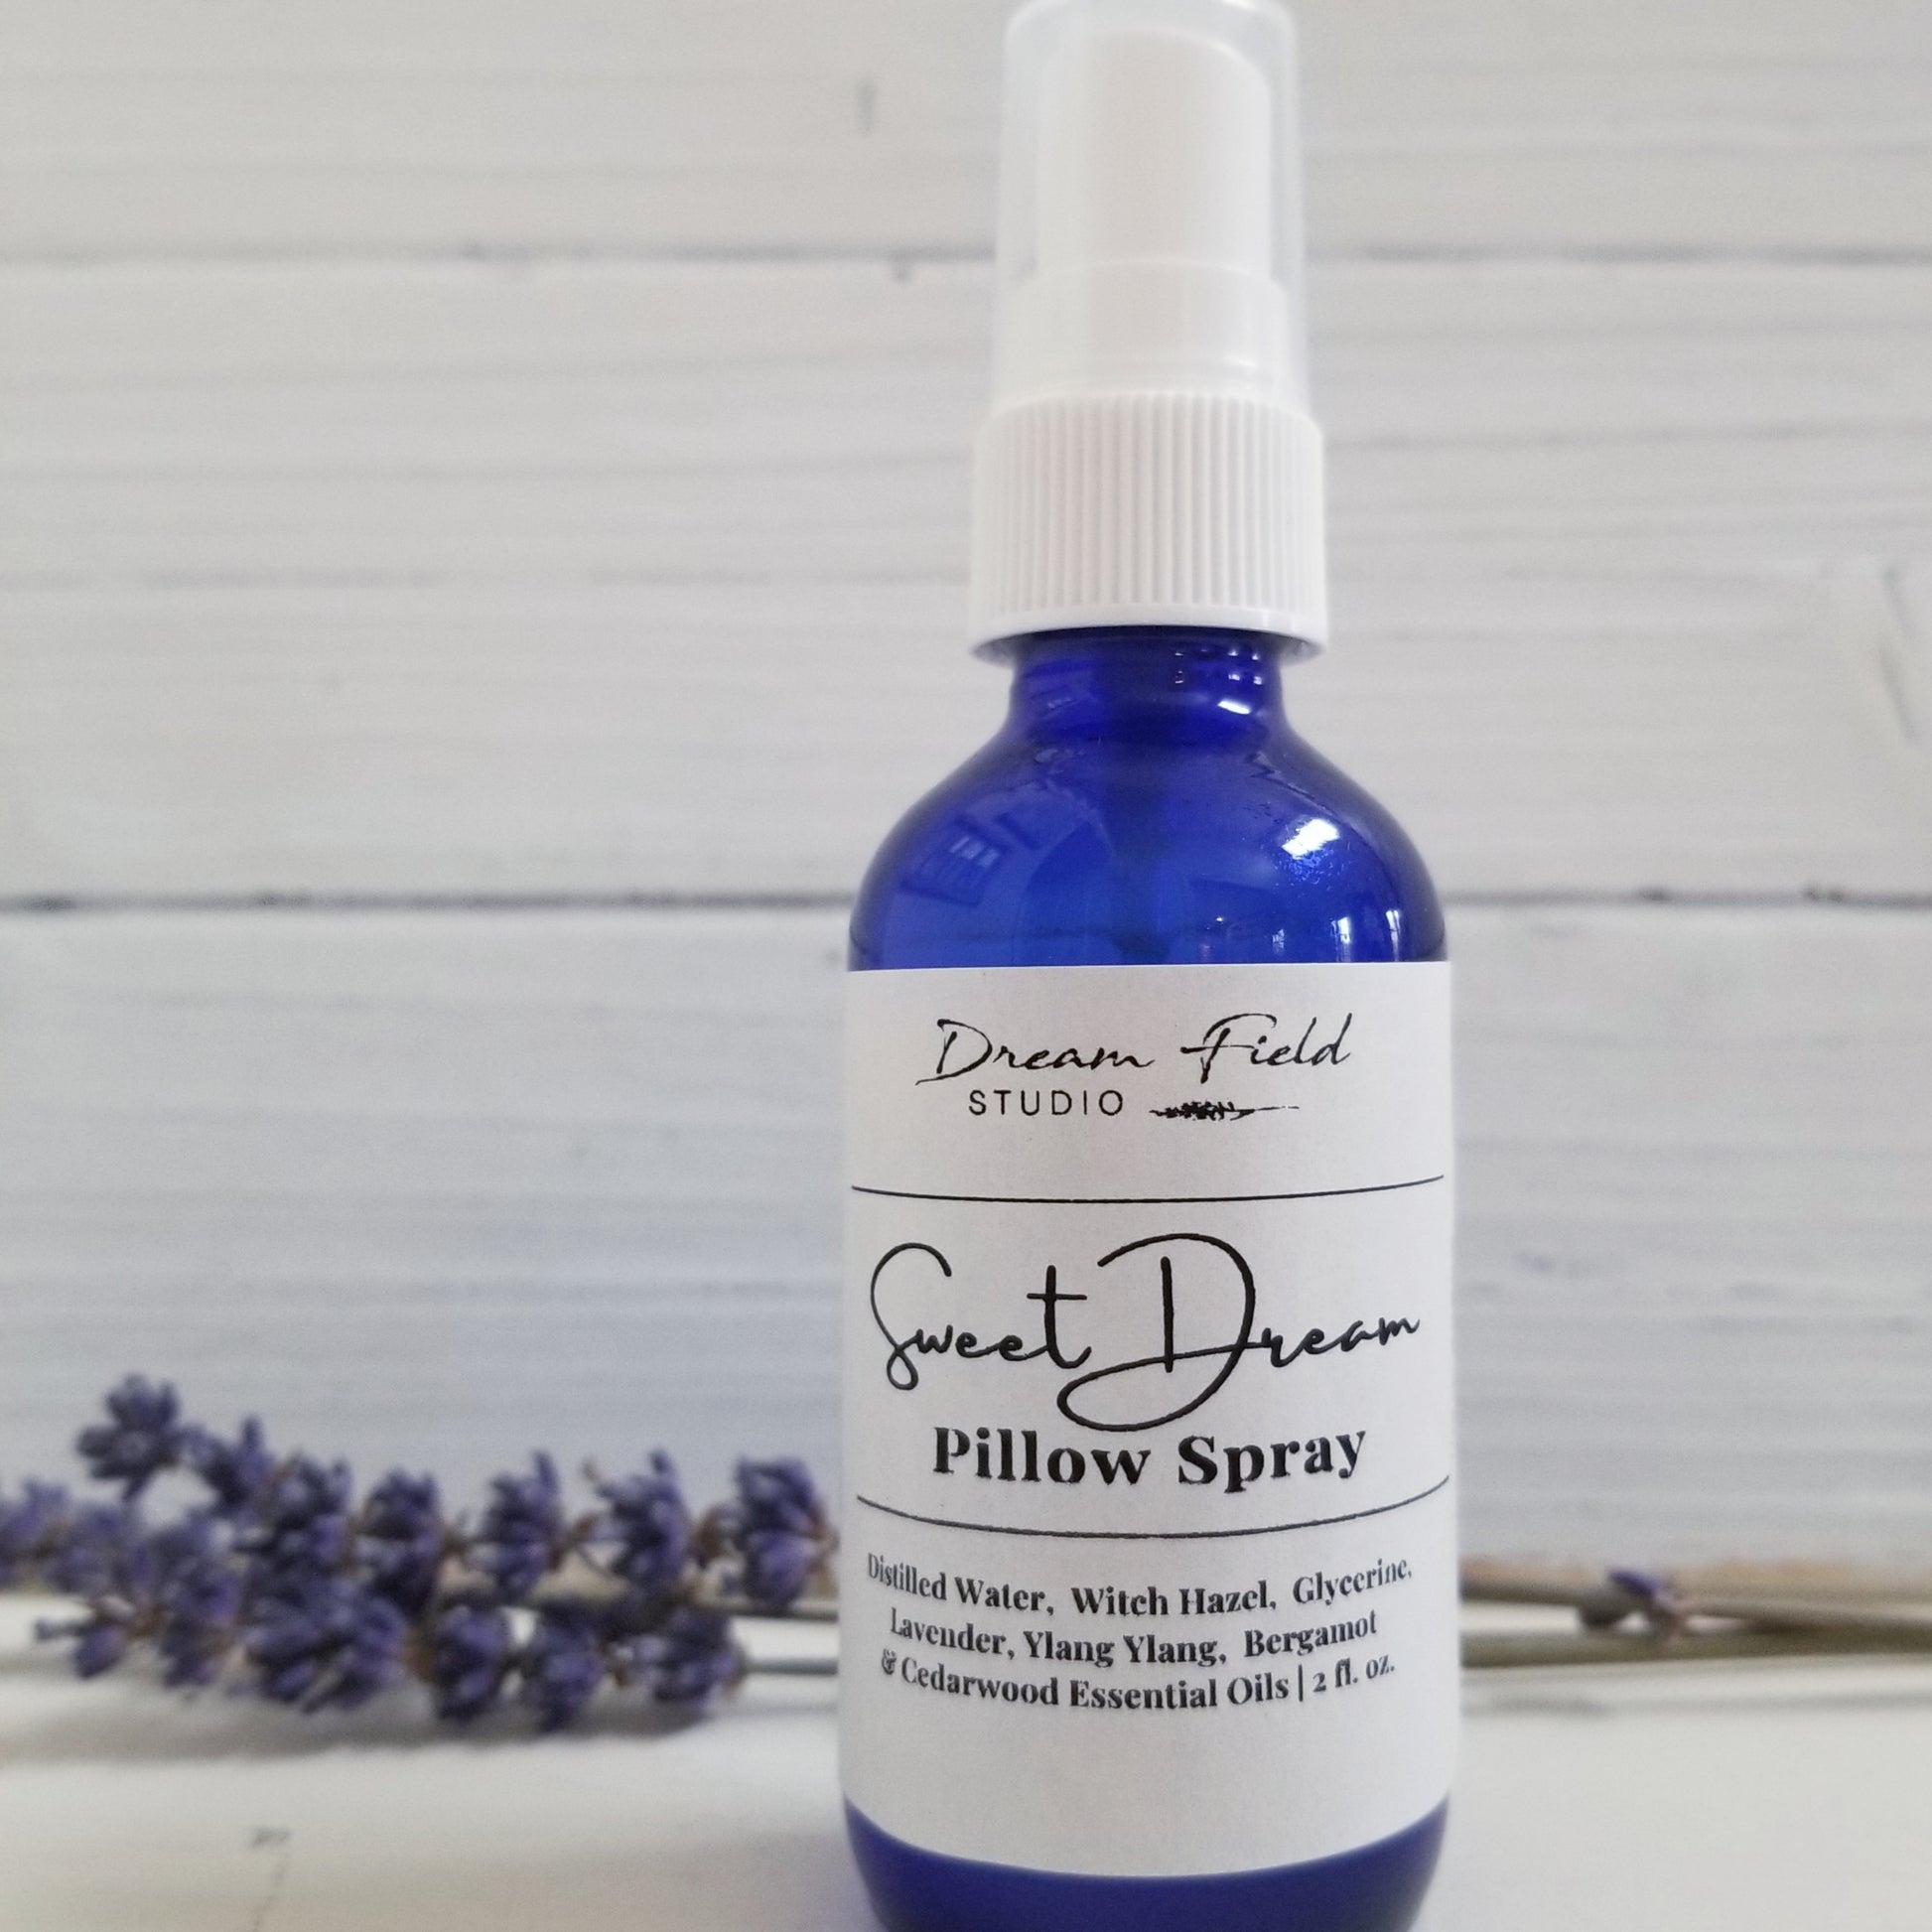 Sweet Dream lavender pillow spray in blue bottle